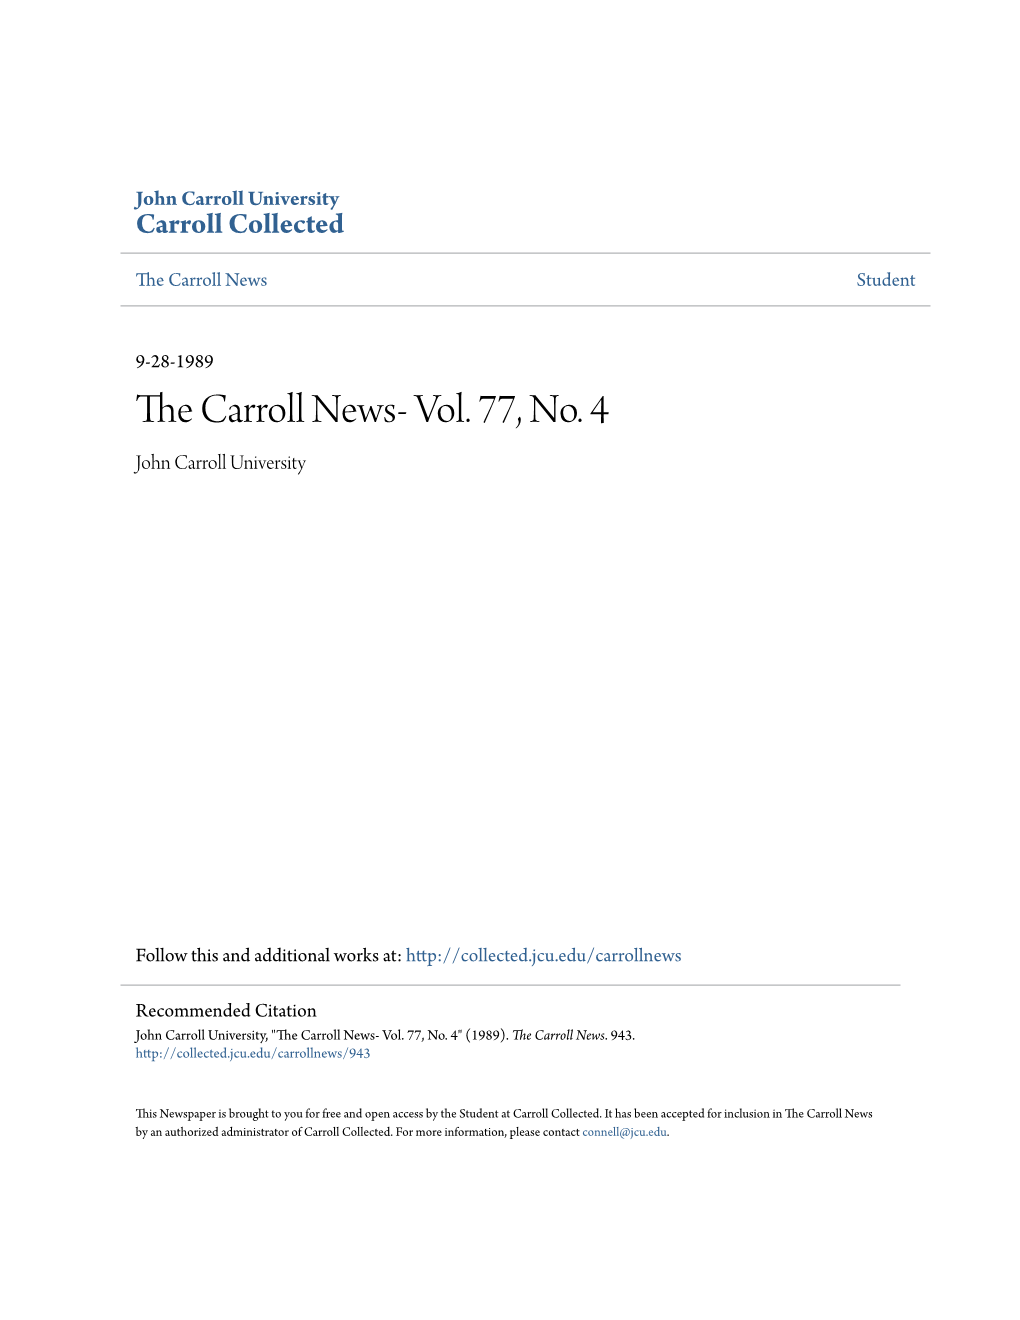 The Carroll News- Vol. 77, No. 4